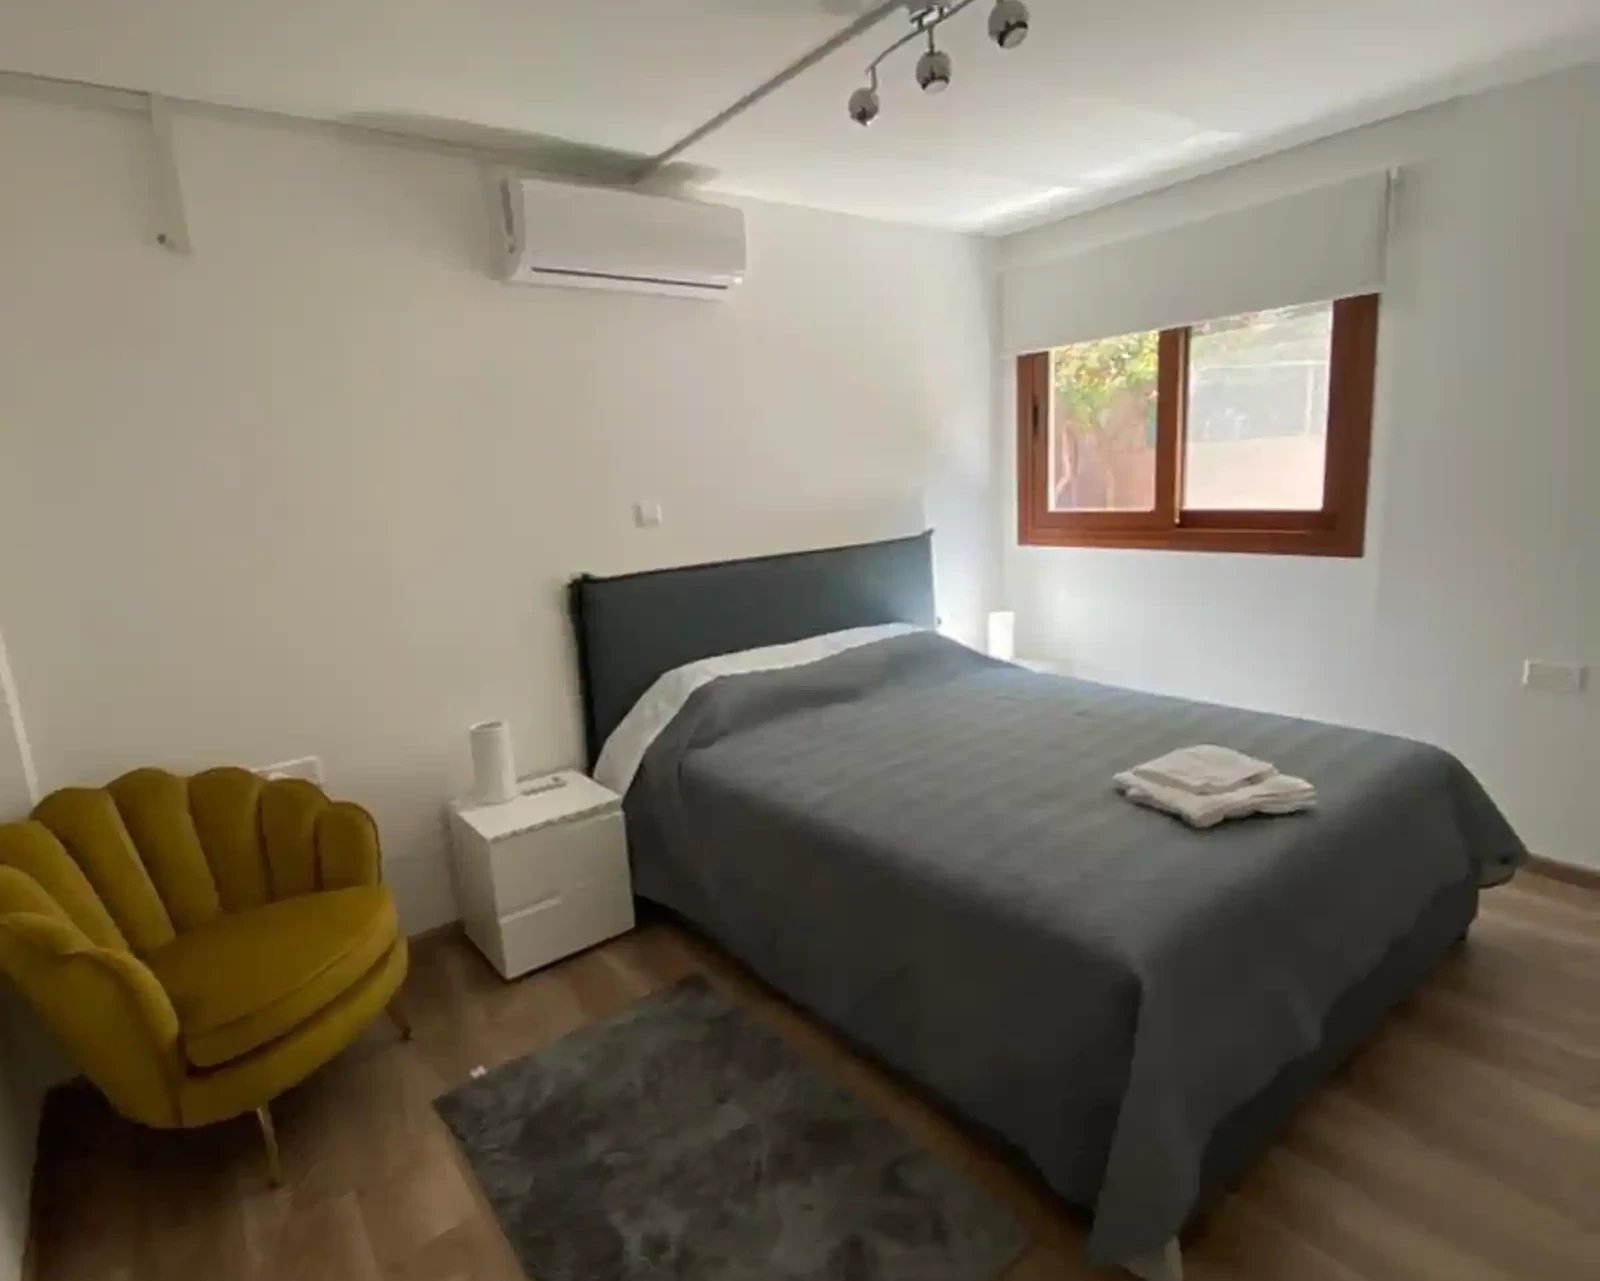 2-bedroom semi-detached to rent €1.370, image 1